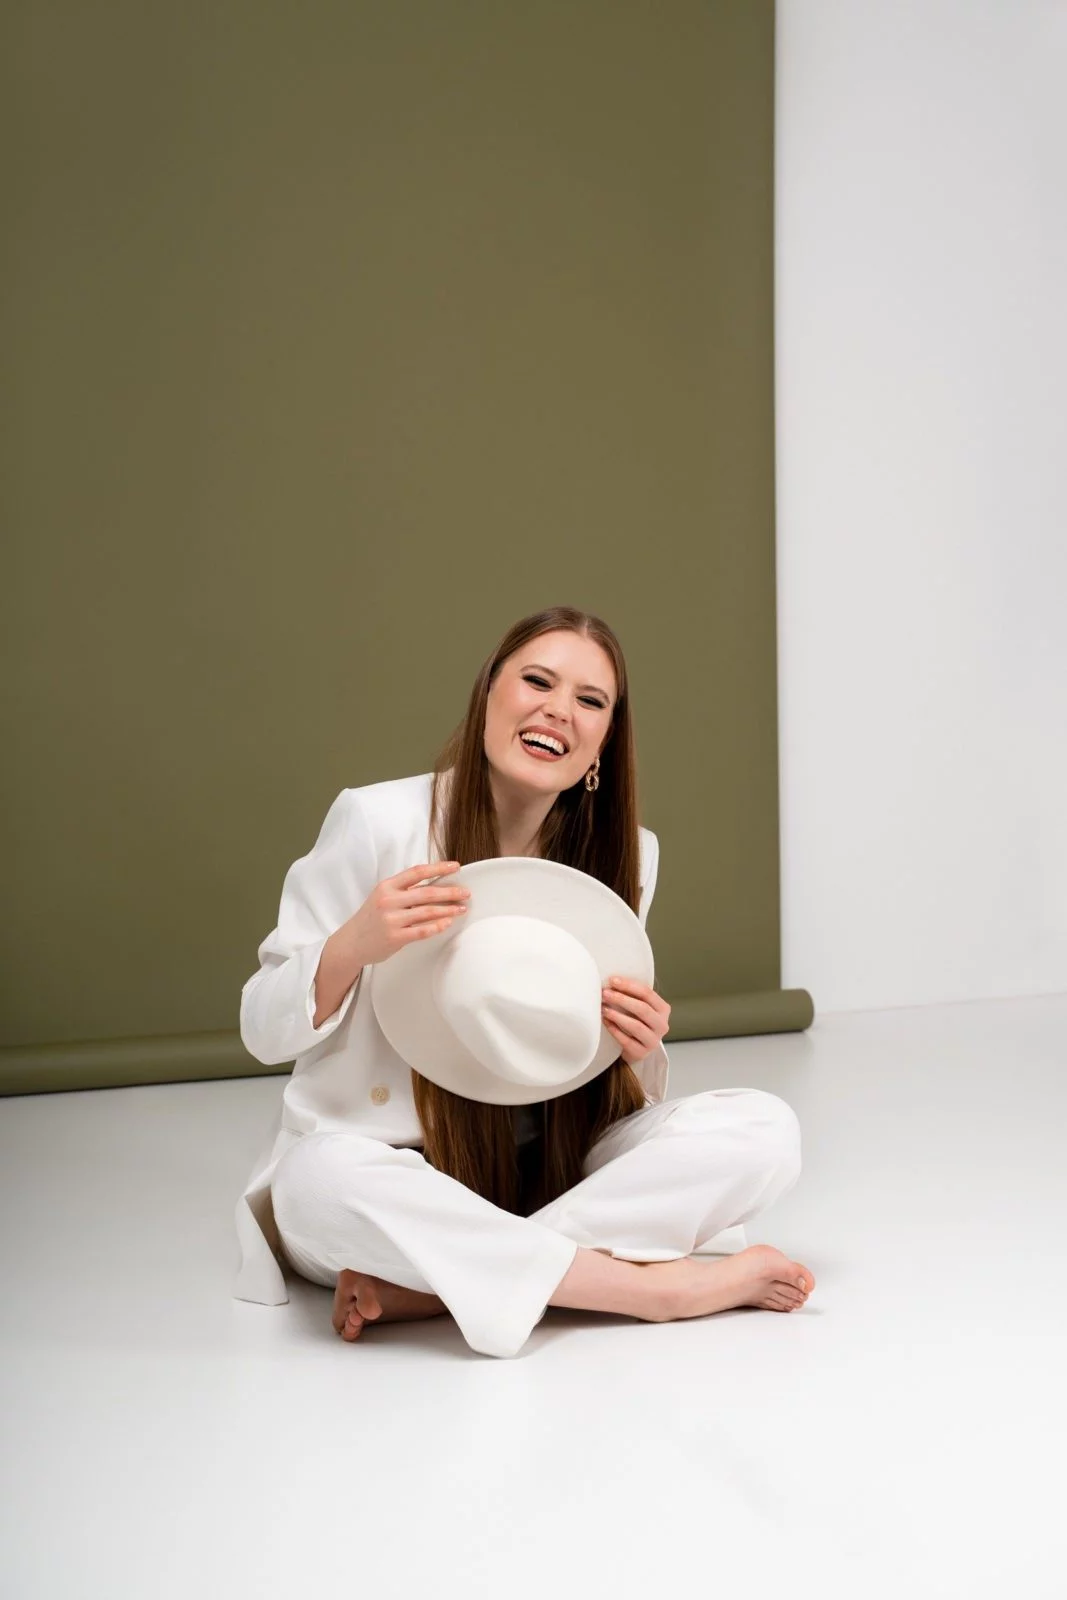 Portretna fotografija rdečelaske deklice z belimi hlačami, ki se nasmeja in gleda v daljavo, posneta v našem fotografskem studiu v Ljubljani.